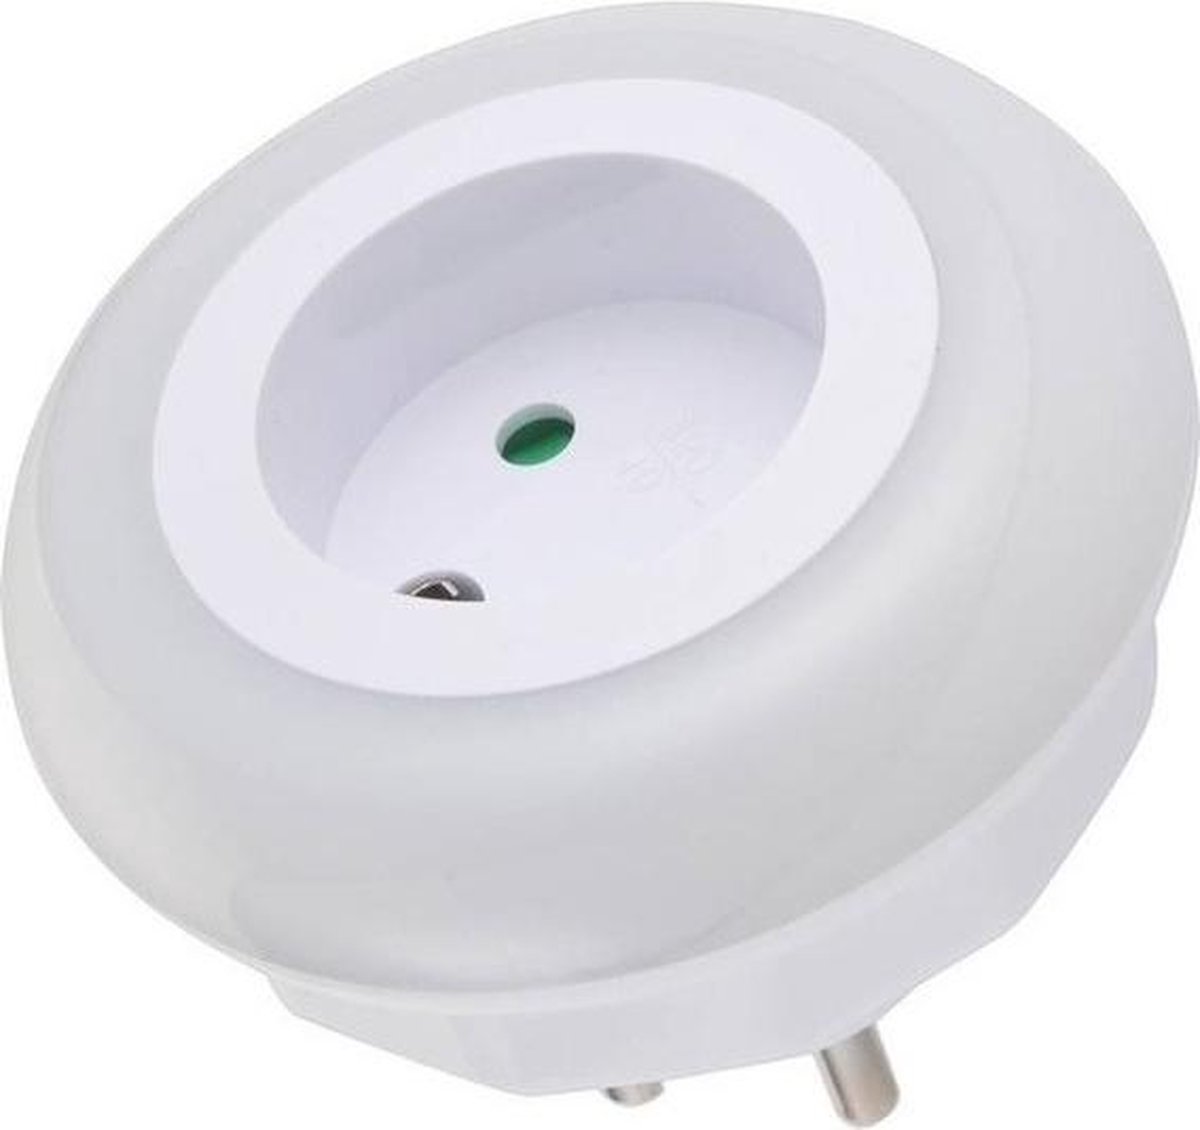 Wantrouwen Kwijting Ziek persoon Stopcontact nachtlamp met LED sensor - nachtverlichting | bol.com